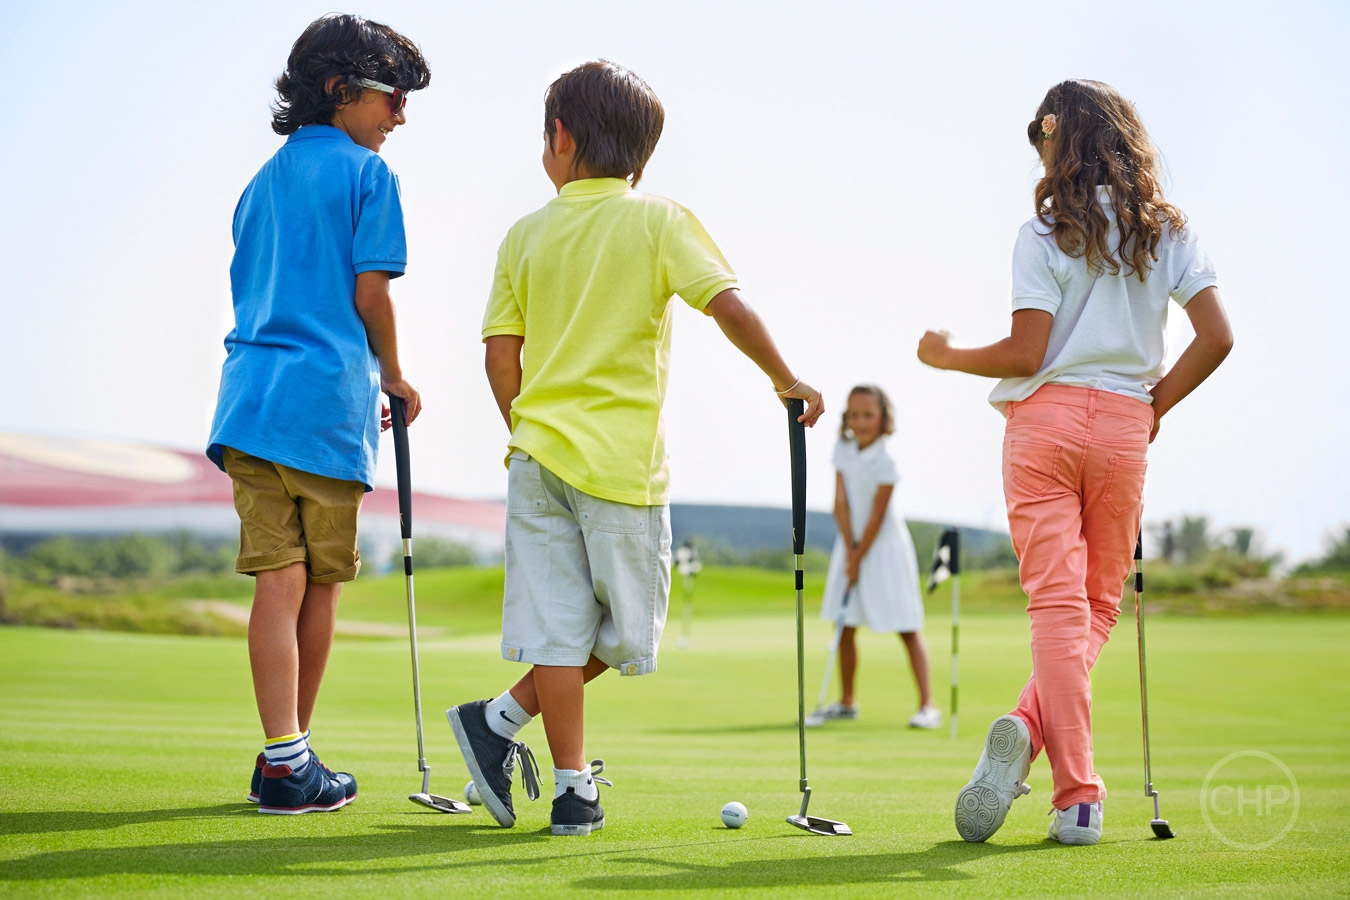 Do you enjoy playing sports. Дети в гольфах. Дети играют в гольф. Гольф детский. Гольф для дошкольников.